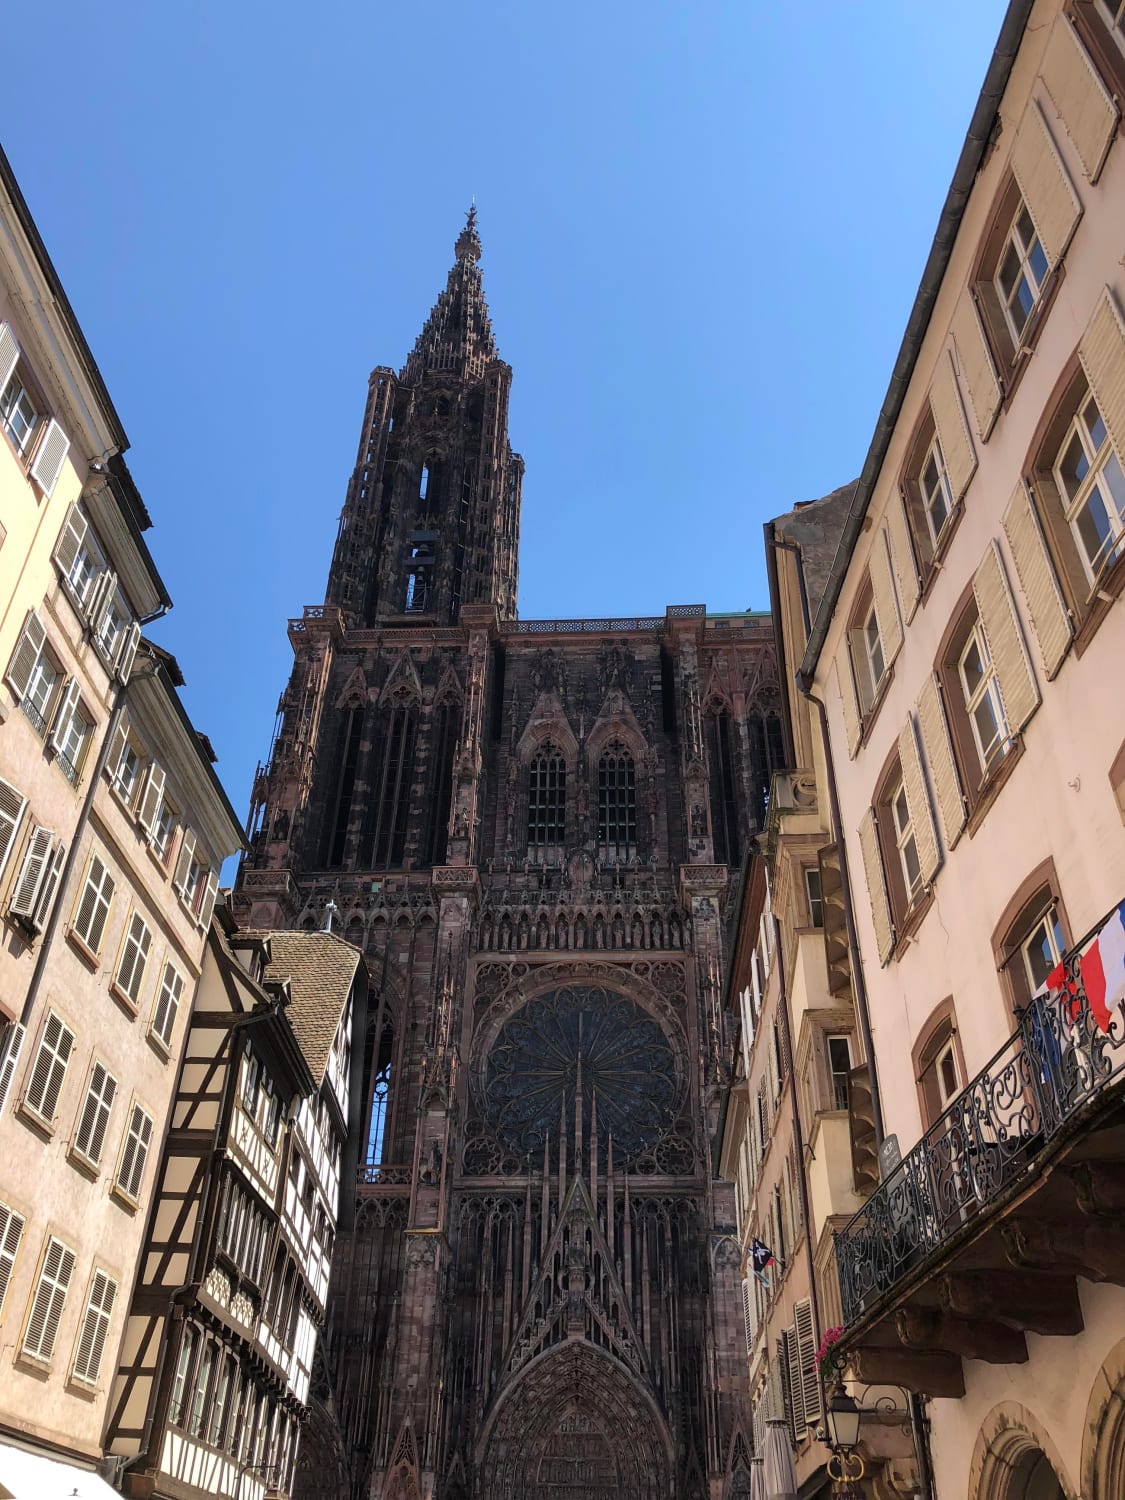 Strasbourg in France